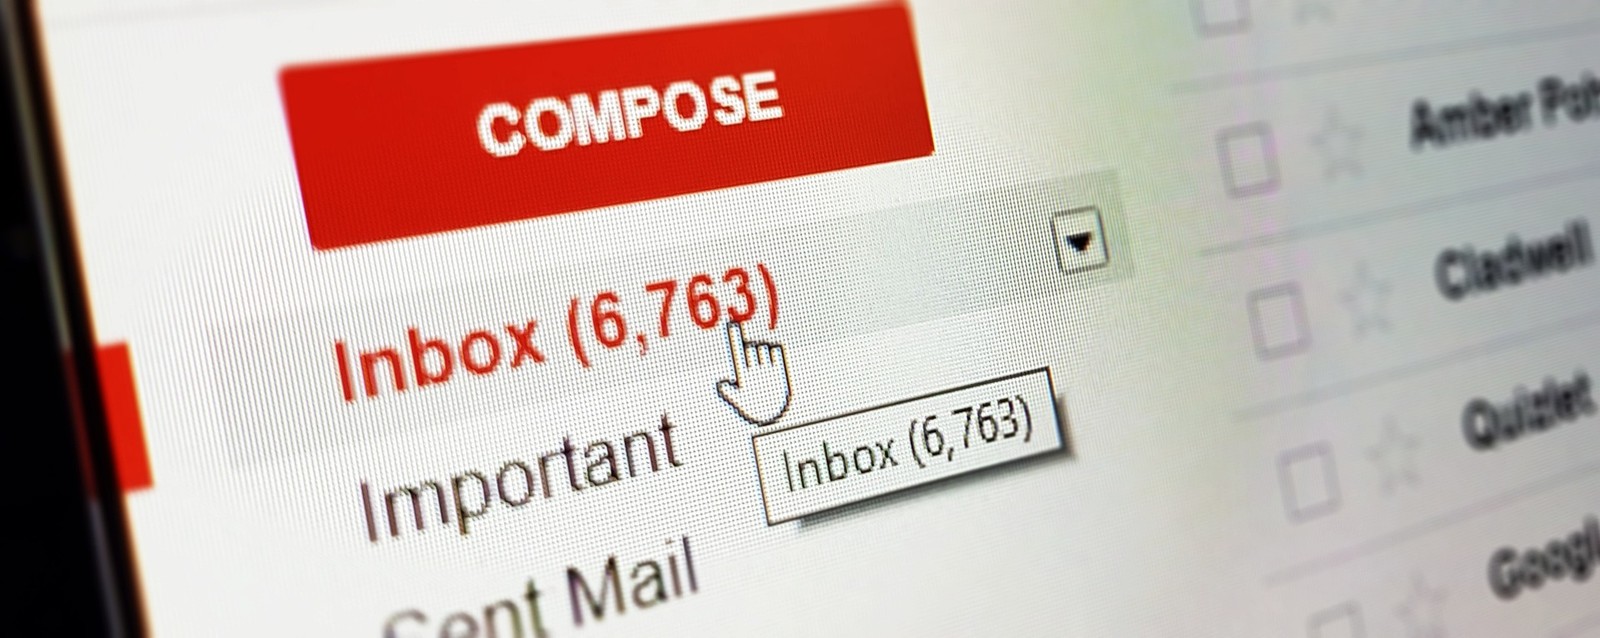 Google skasuje stare konta Gmail. Jeśli nie chcesz stracić danych, musisz się pospieszyć